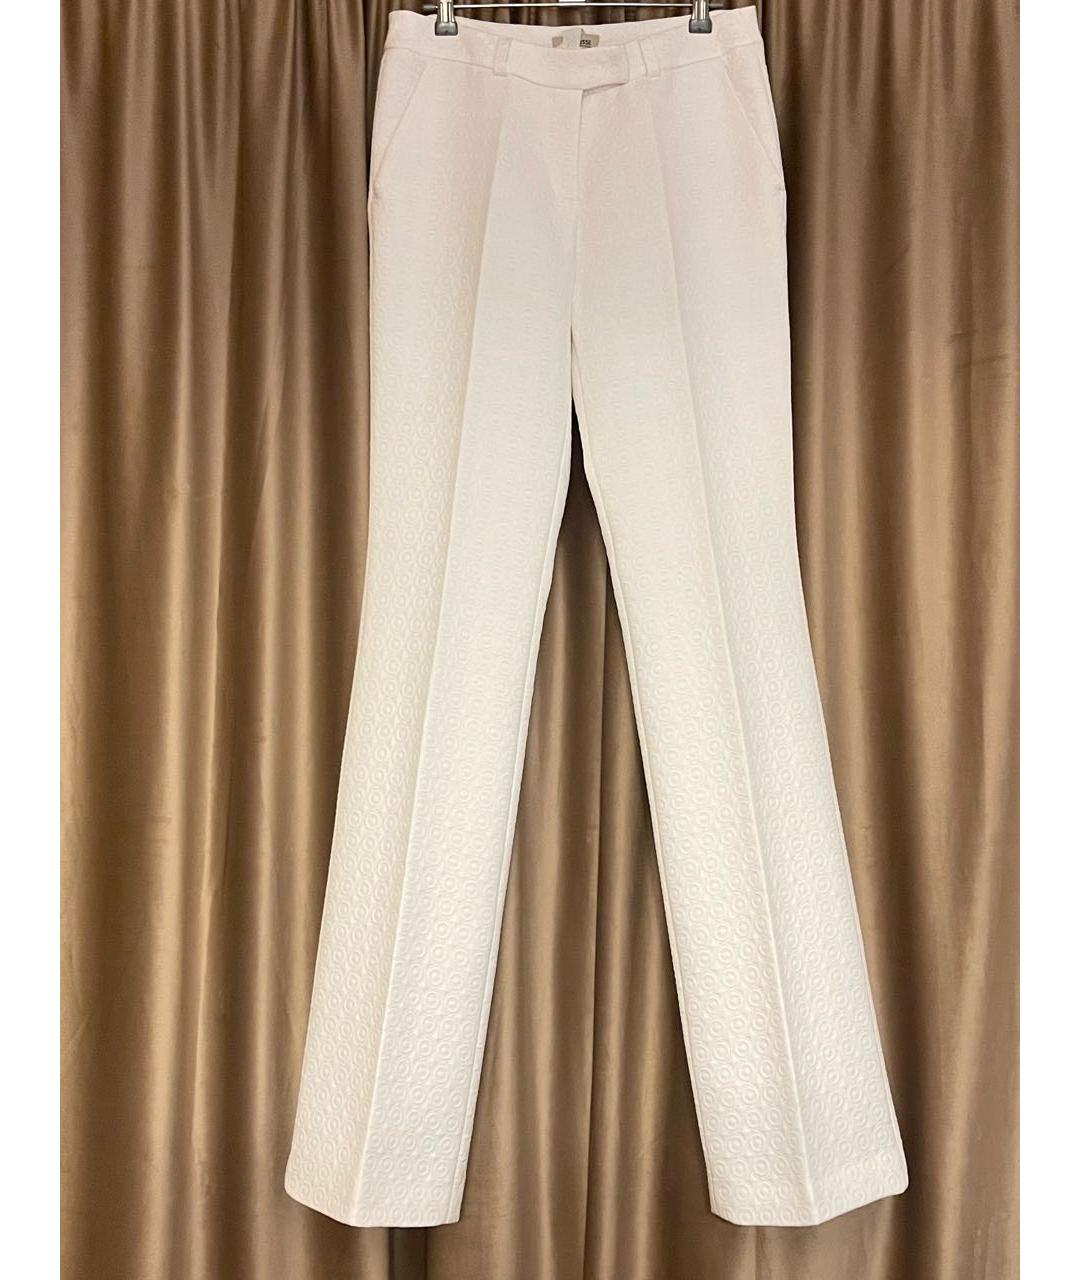 A LA RUSSE Белый костюм с брюками, фото 2